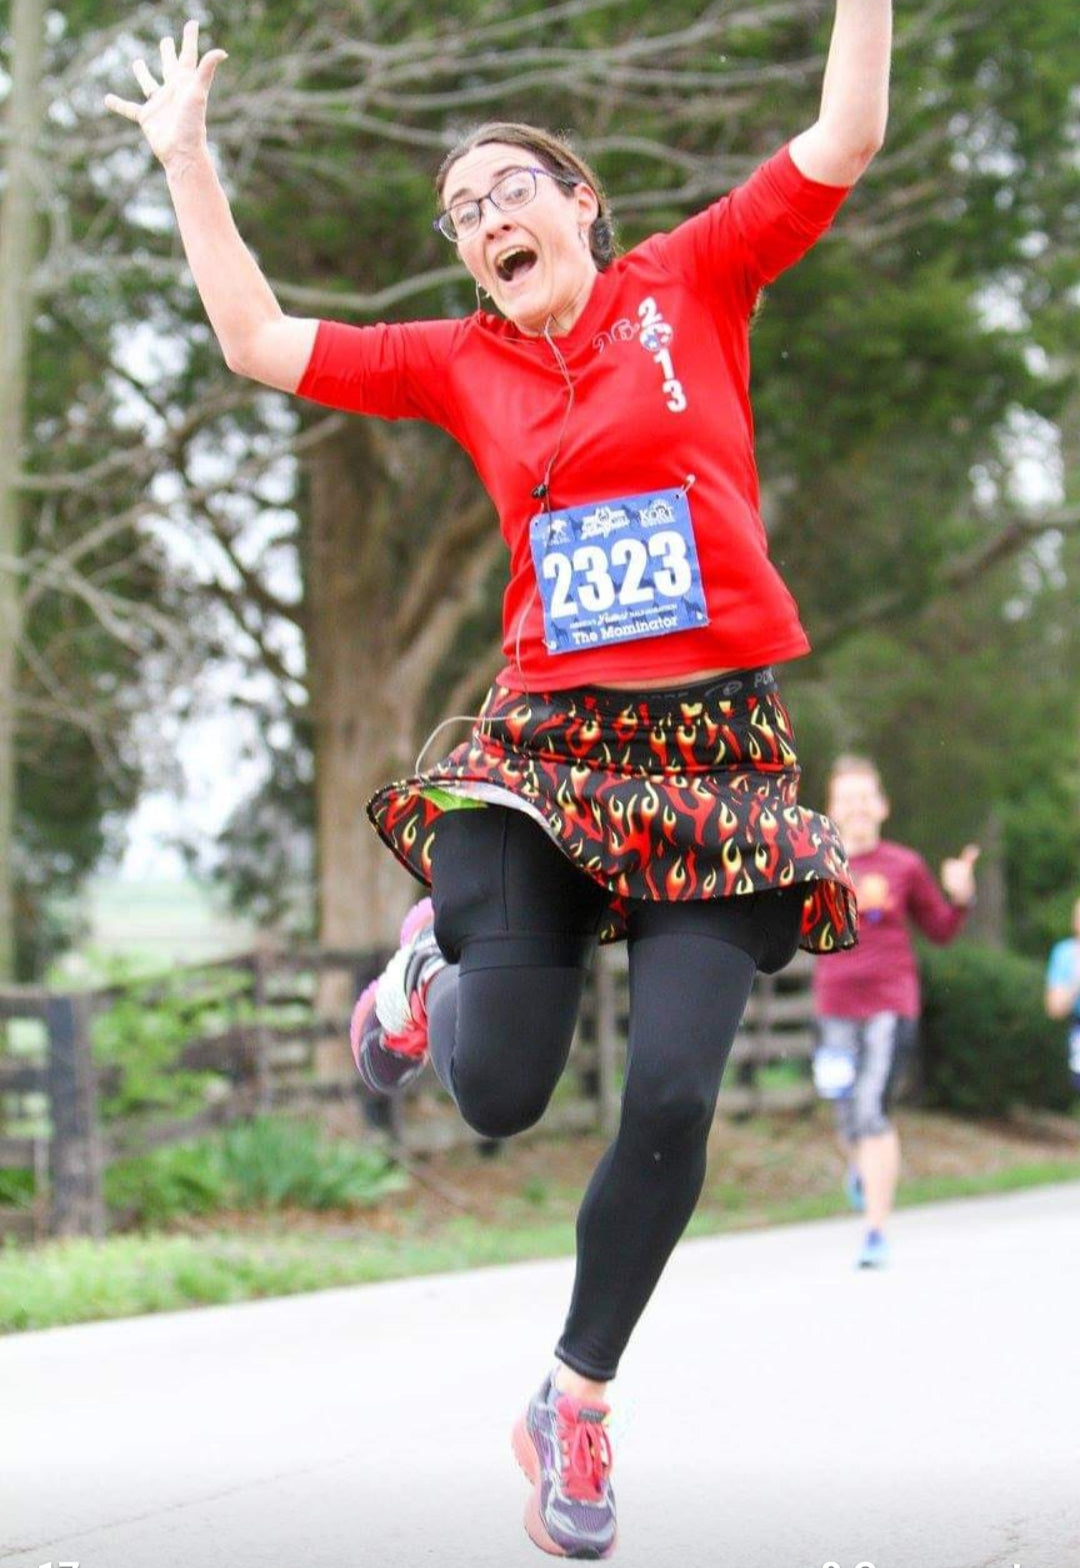 Melissa Marowelli jumping in a race wearing a Bolder Athletic Wear skirt